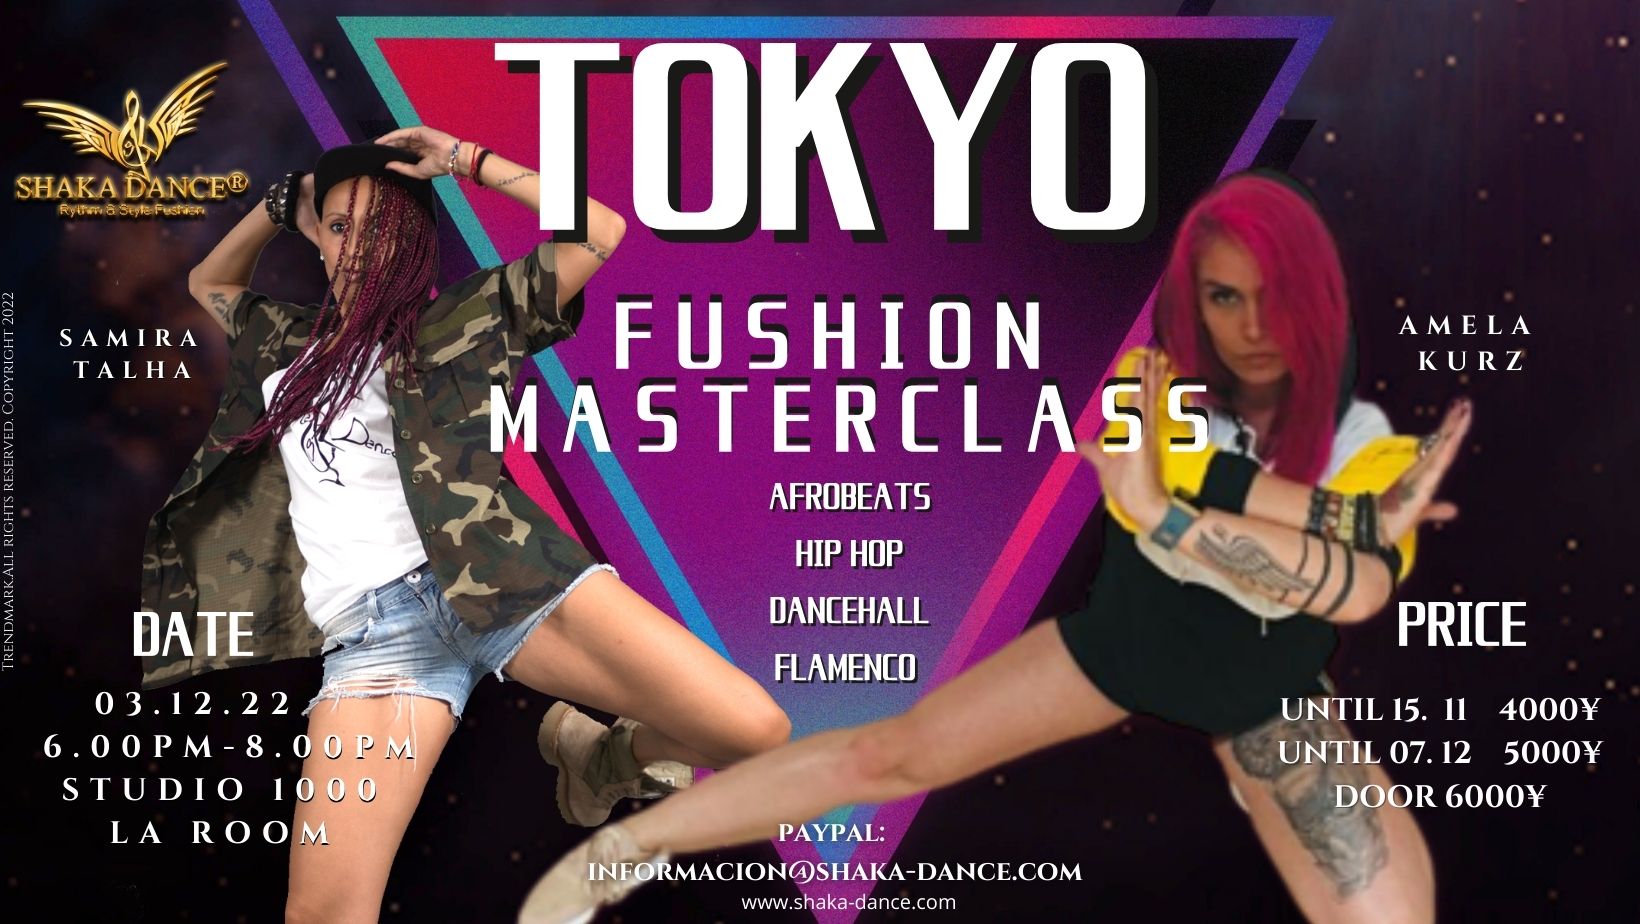 SHAKA DANCE® Masterclass – Tokyo